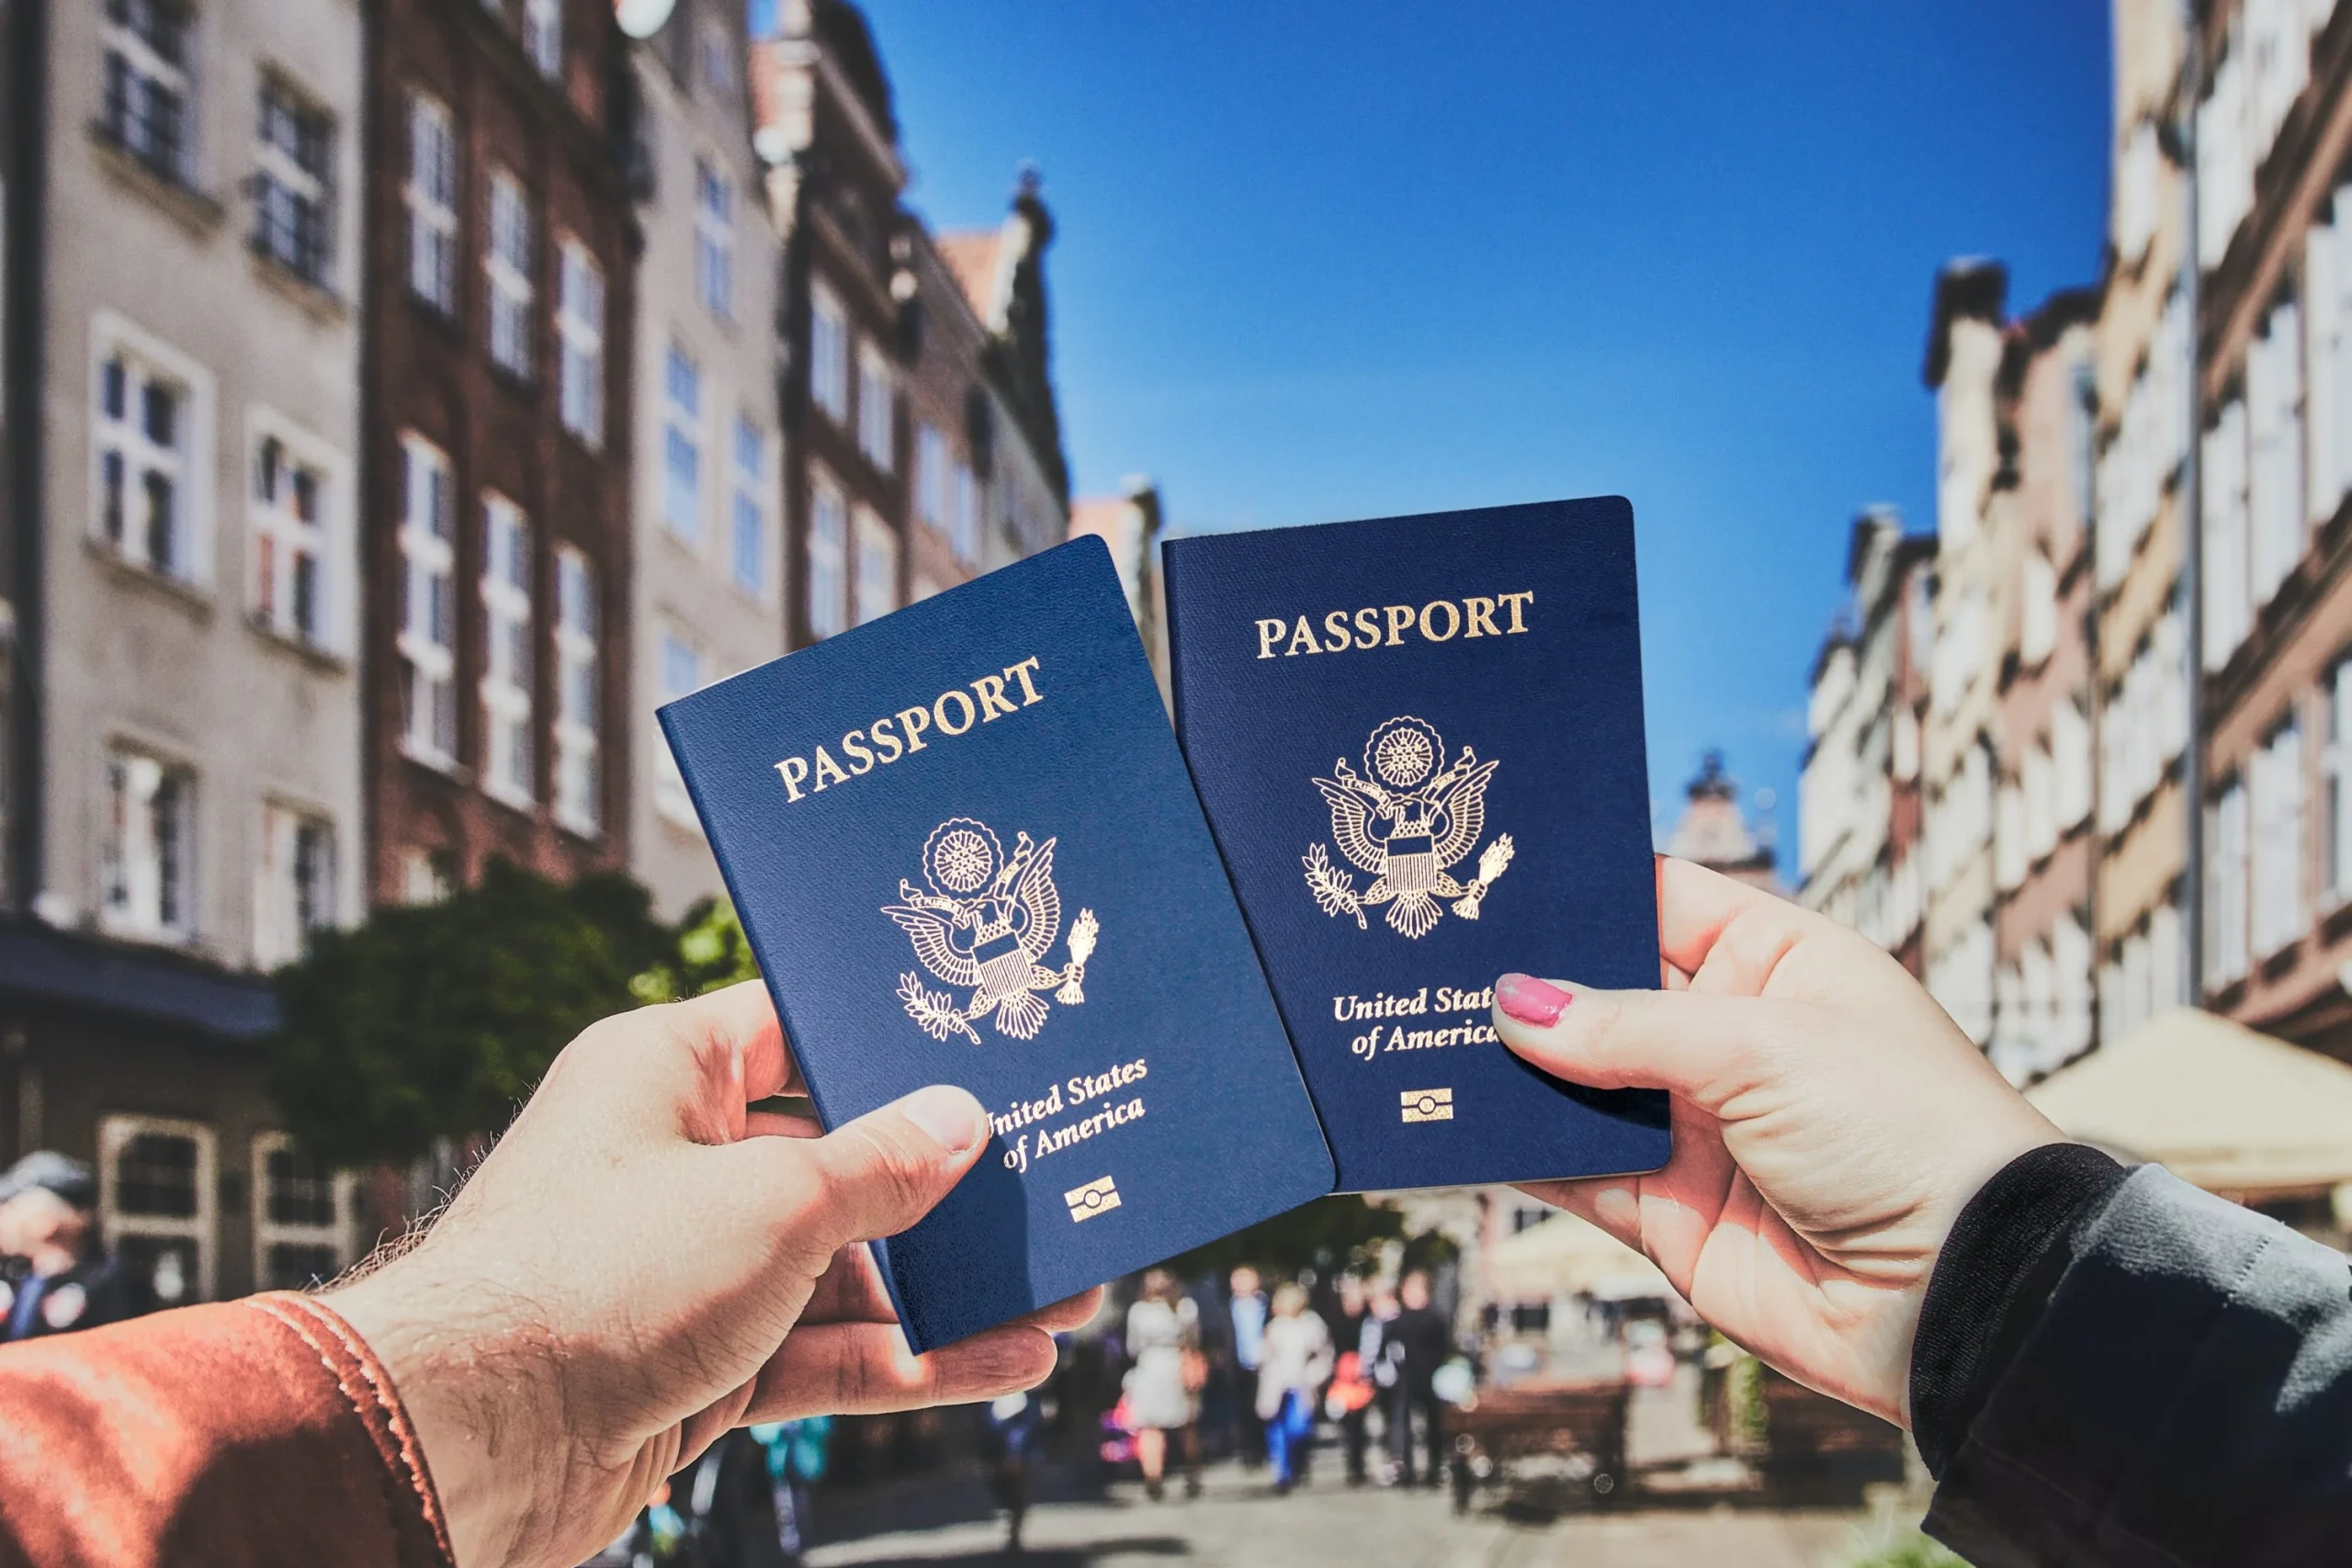 "¿Has estado casado alguna vez?" Sobre las solicitudes de pasaporte: finalidad e impacto